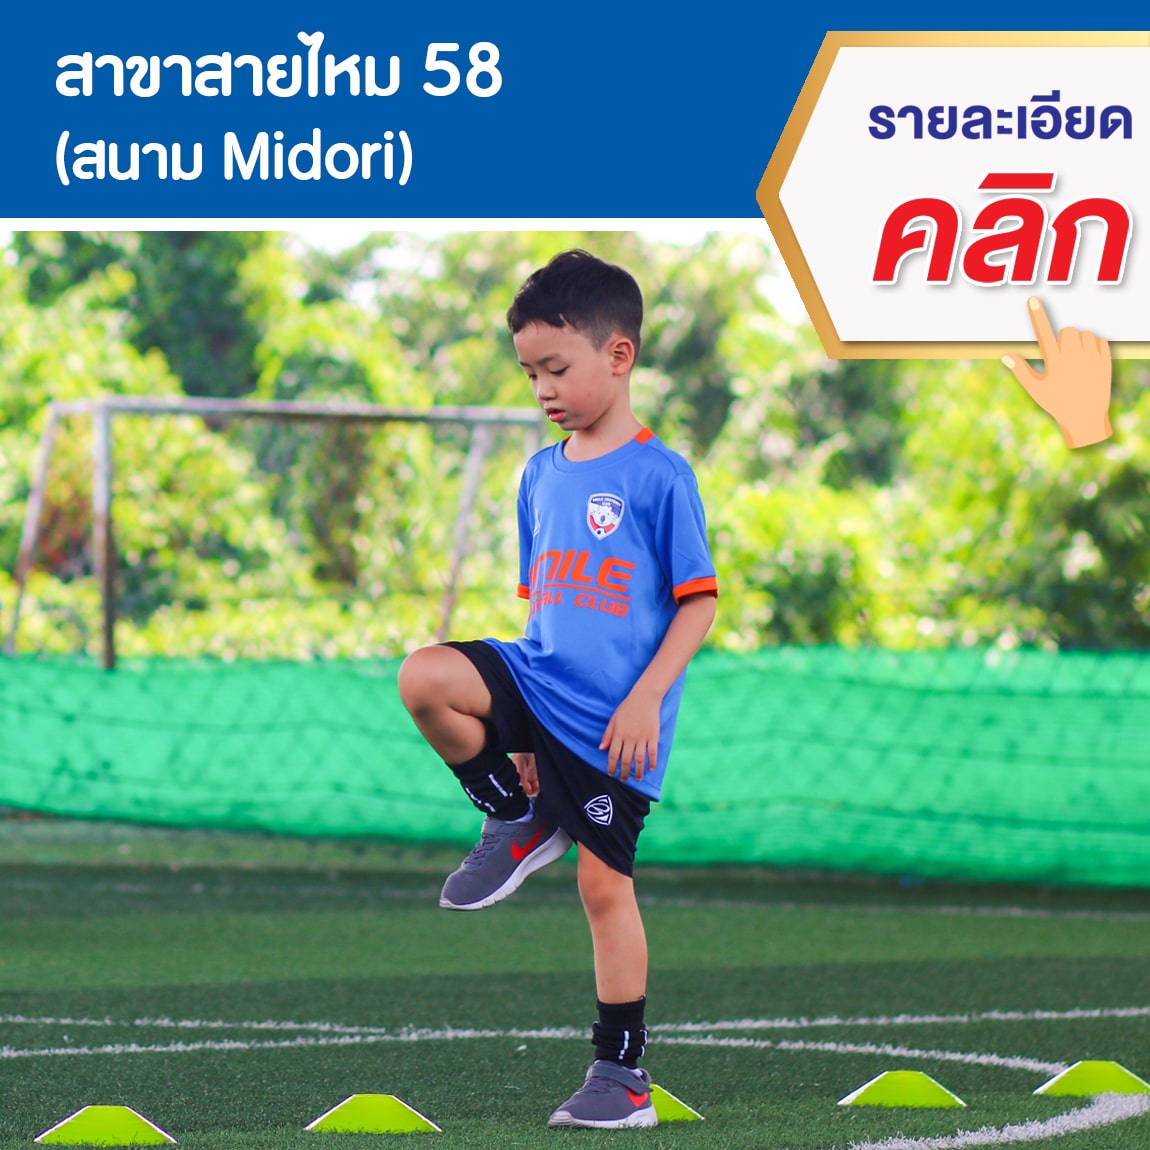 สอนฟุตบอลเด็ก by Smile Football Club_201908003